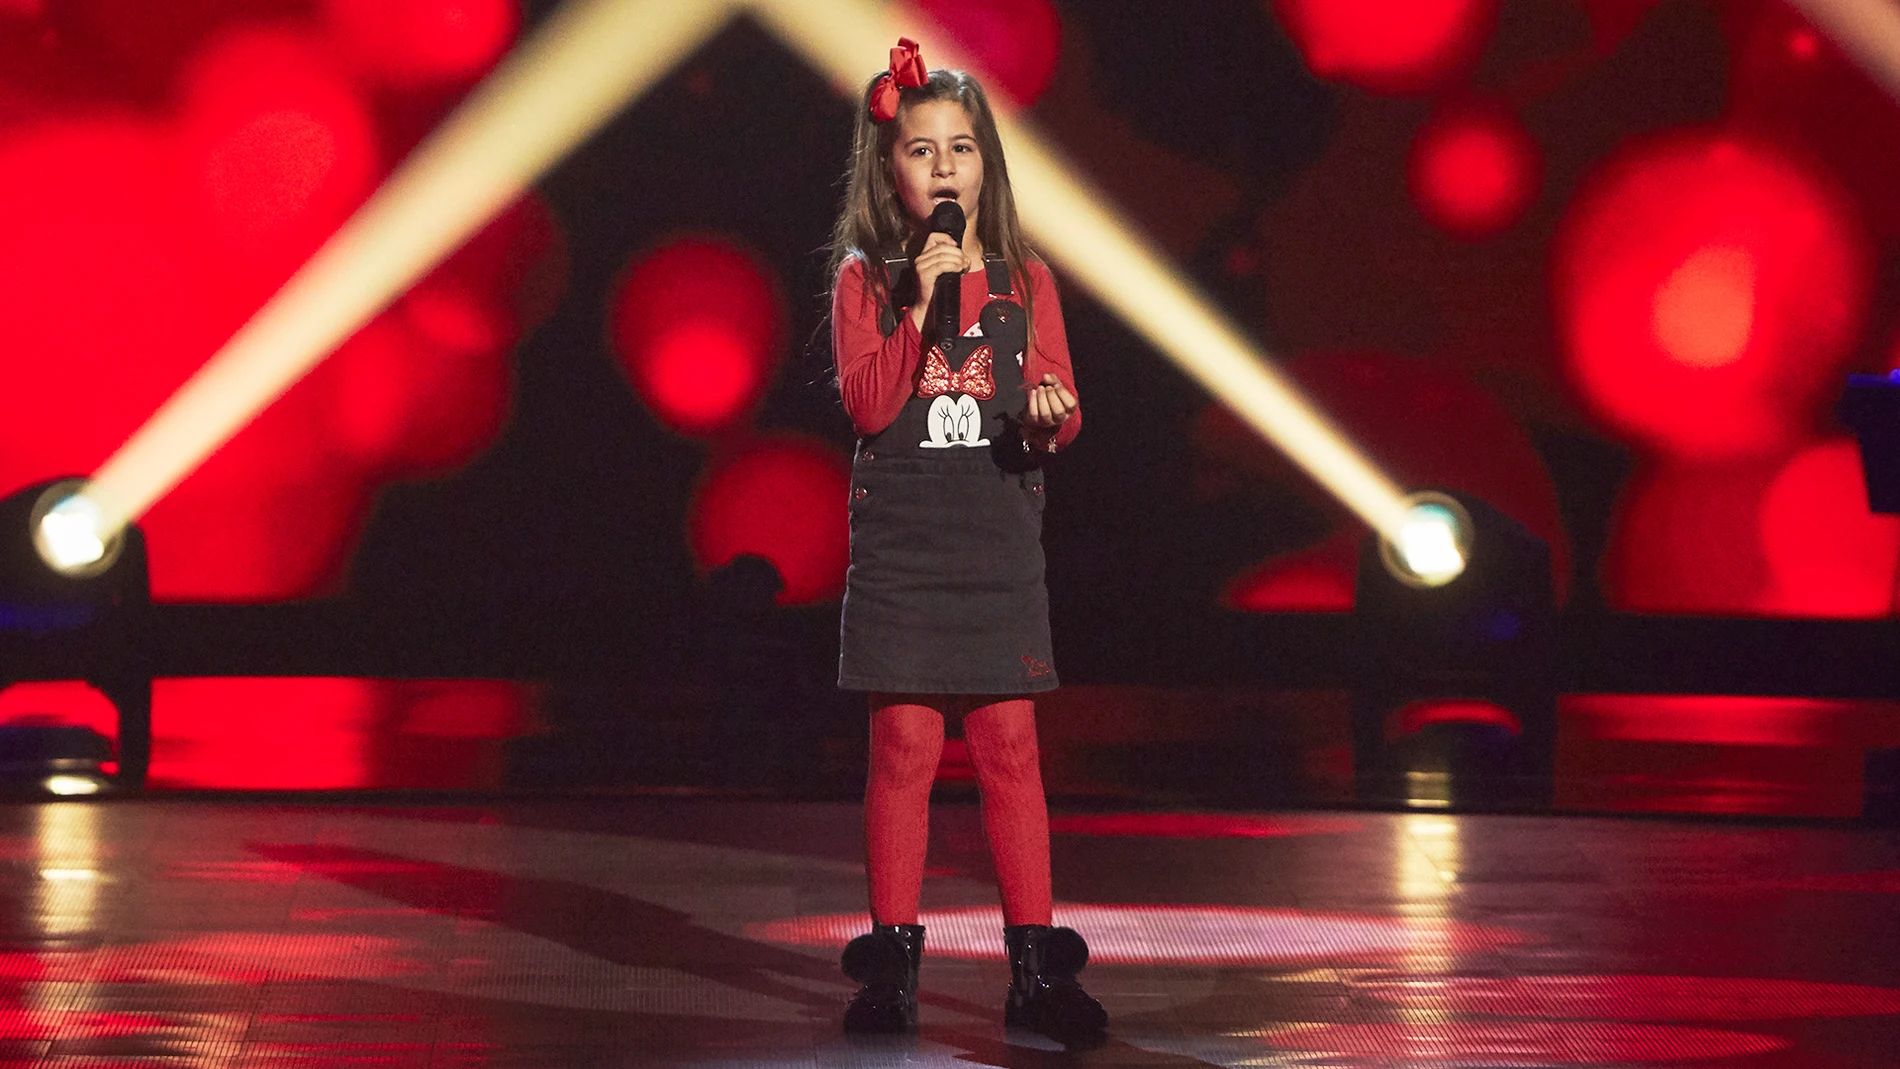 Nazaret Moreno canta 'Señora' en las Audiciones a ciegas de 'La Voz Kids'